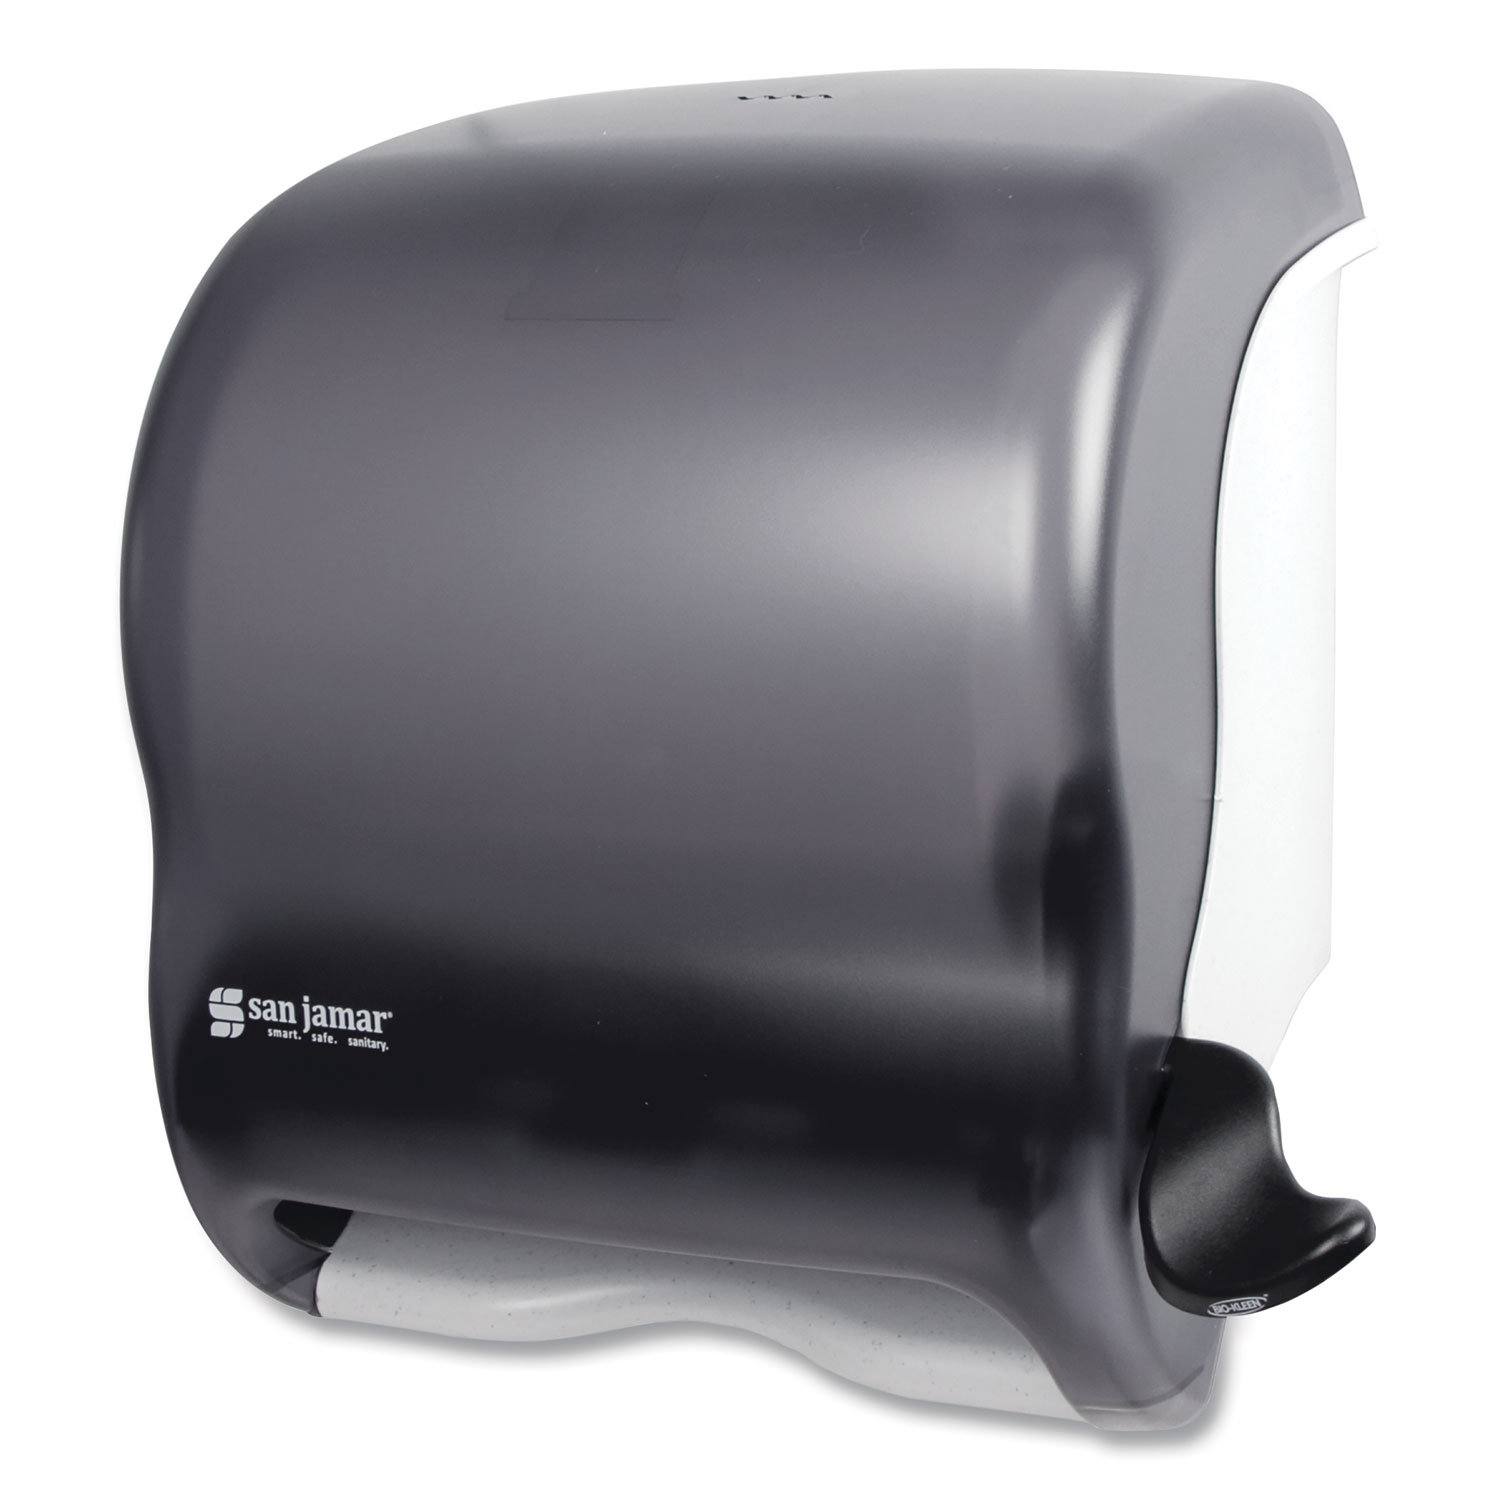 San Jamar Pearl/Black C-fold Pull Paper Towel Dispenser in the